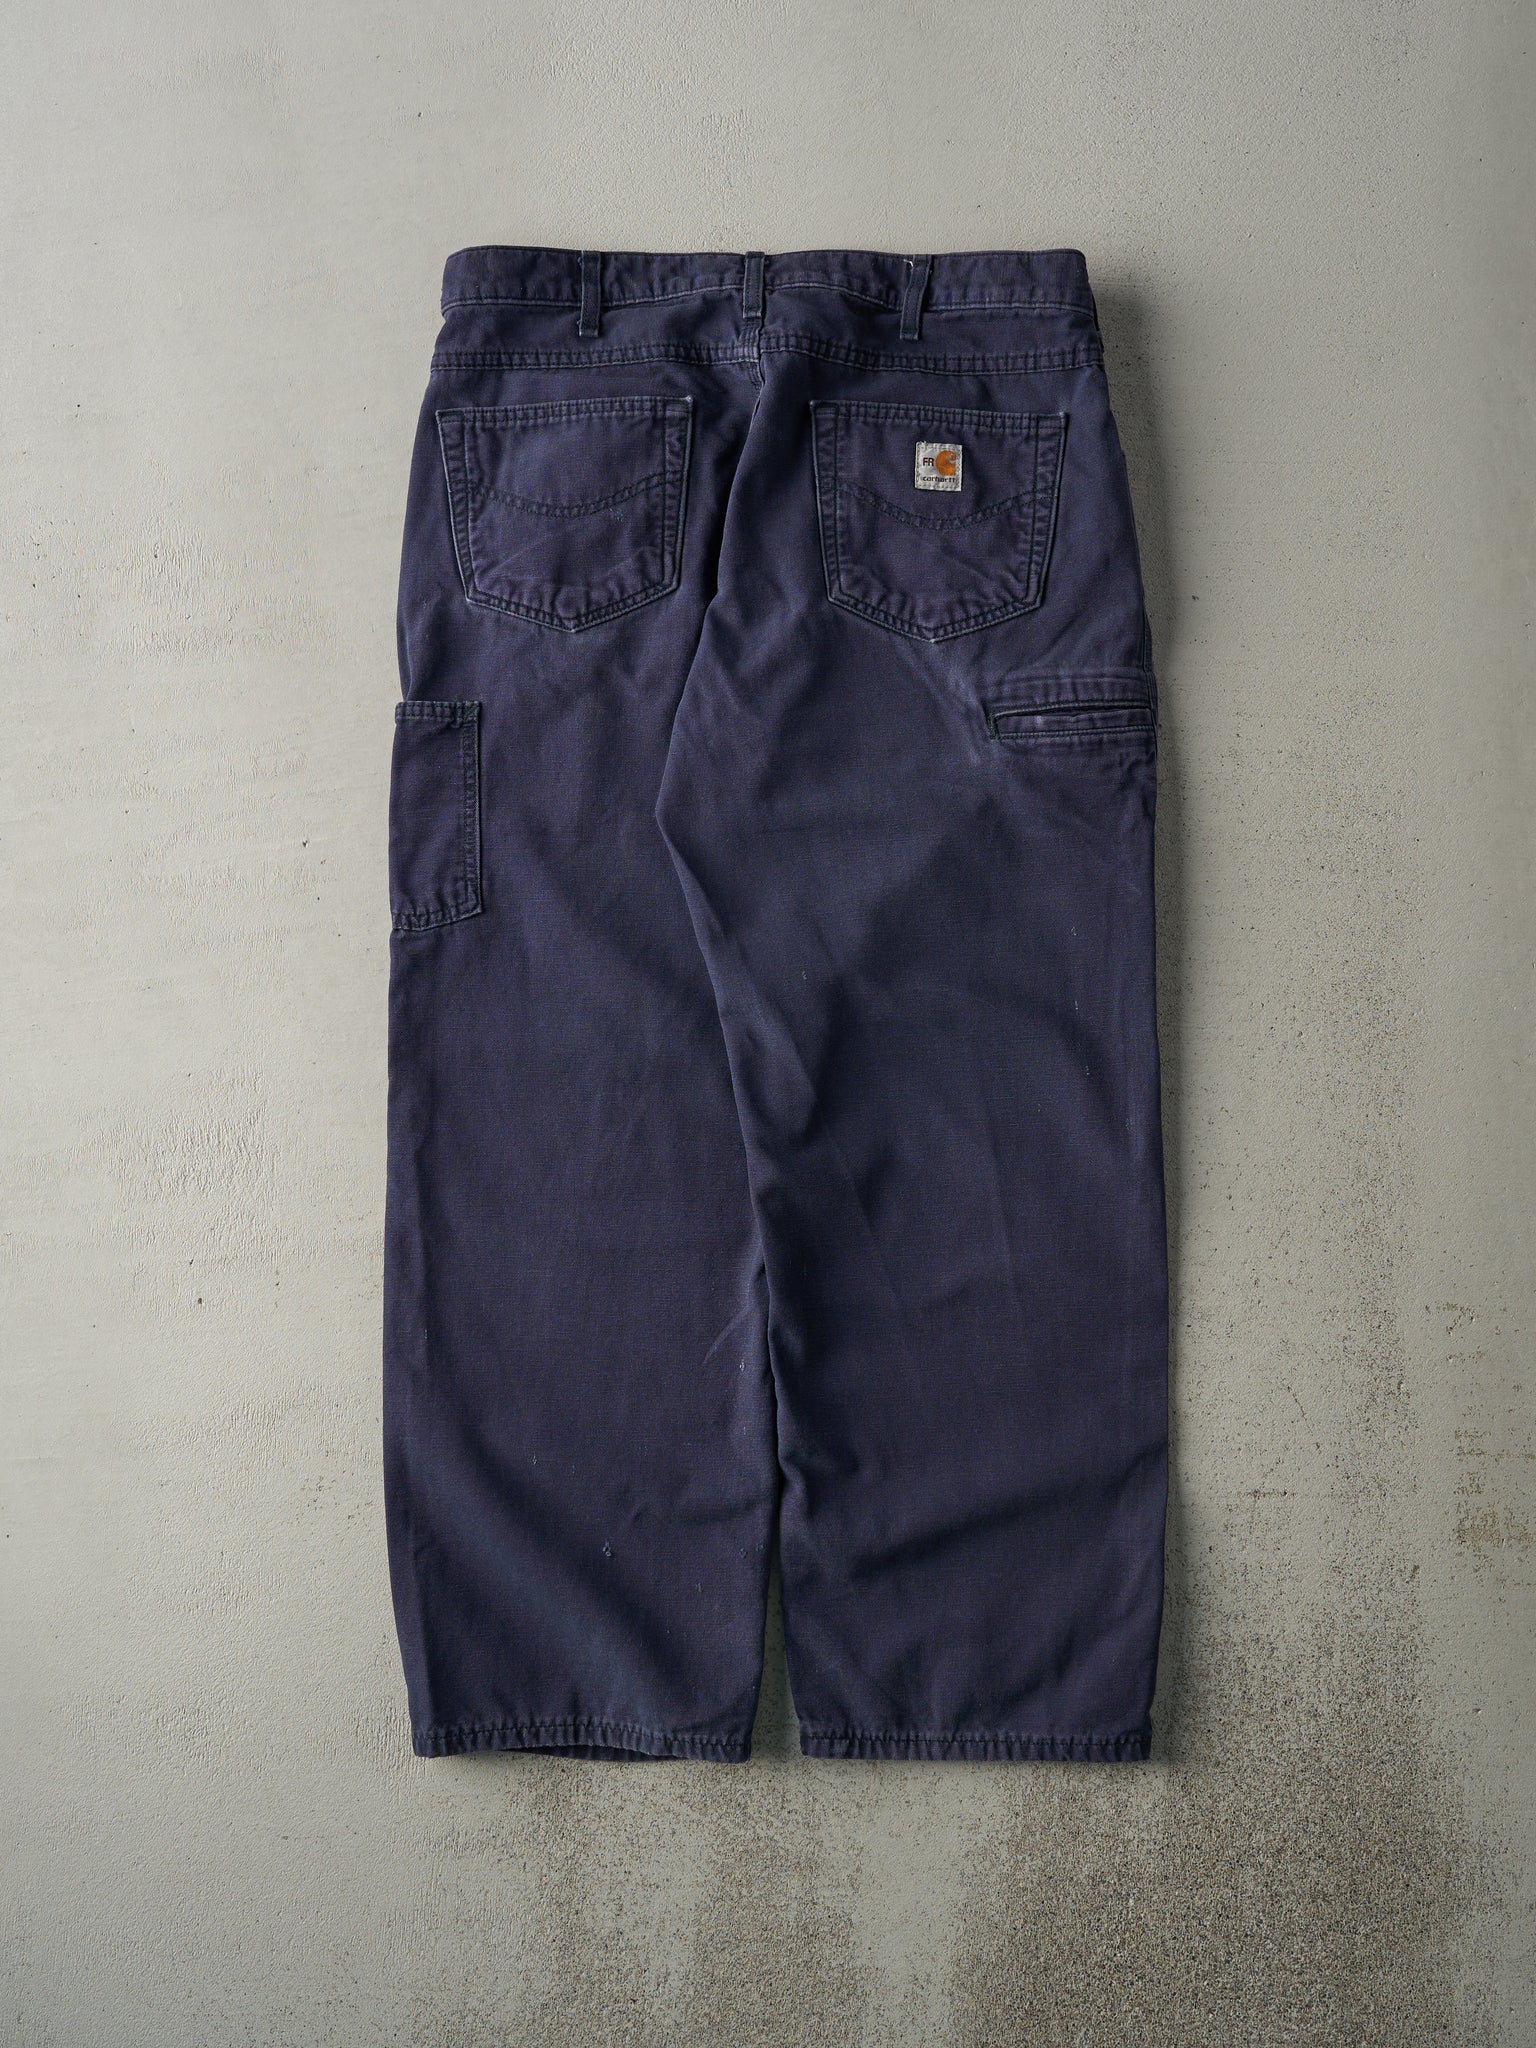 Vintage Y2K Navy Blue Loose Fit Carhartt Fire Resistant Work Pants (35x29)